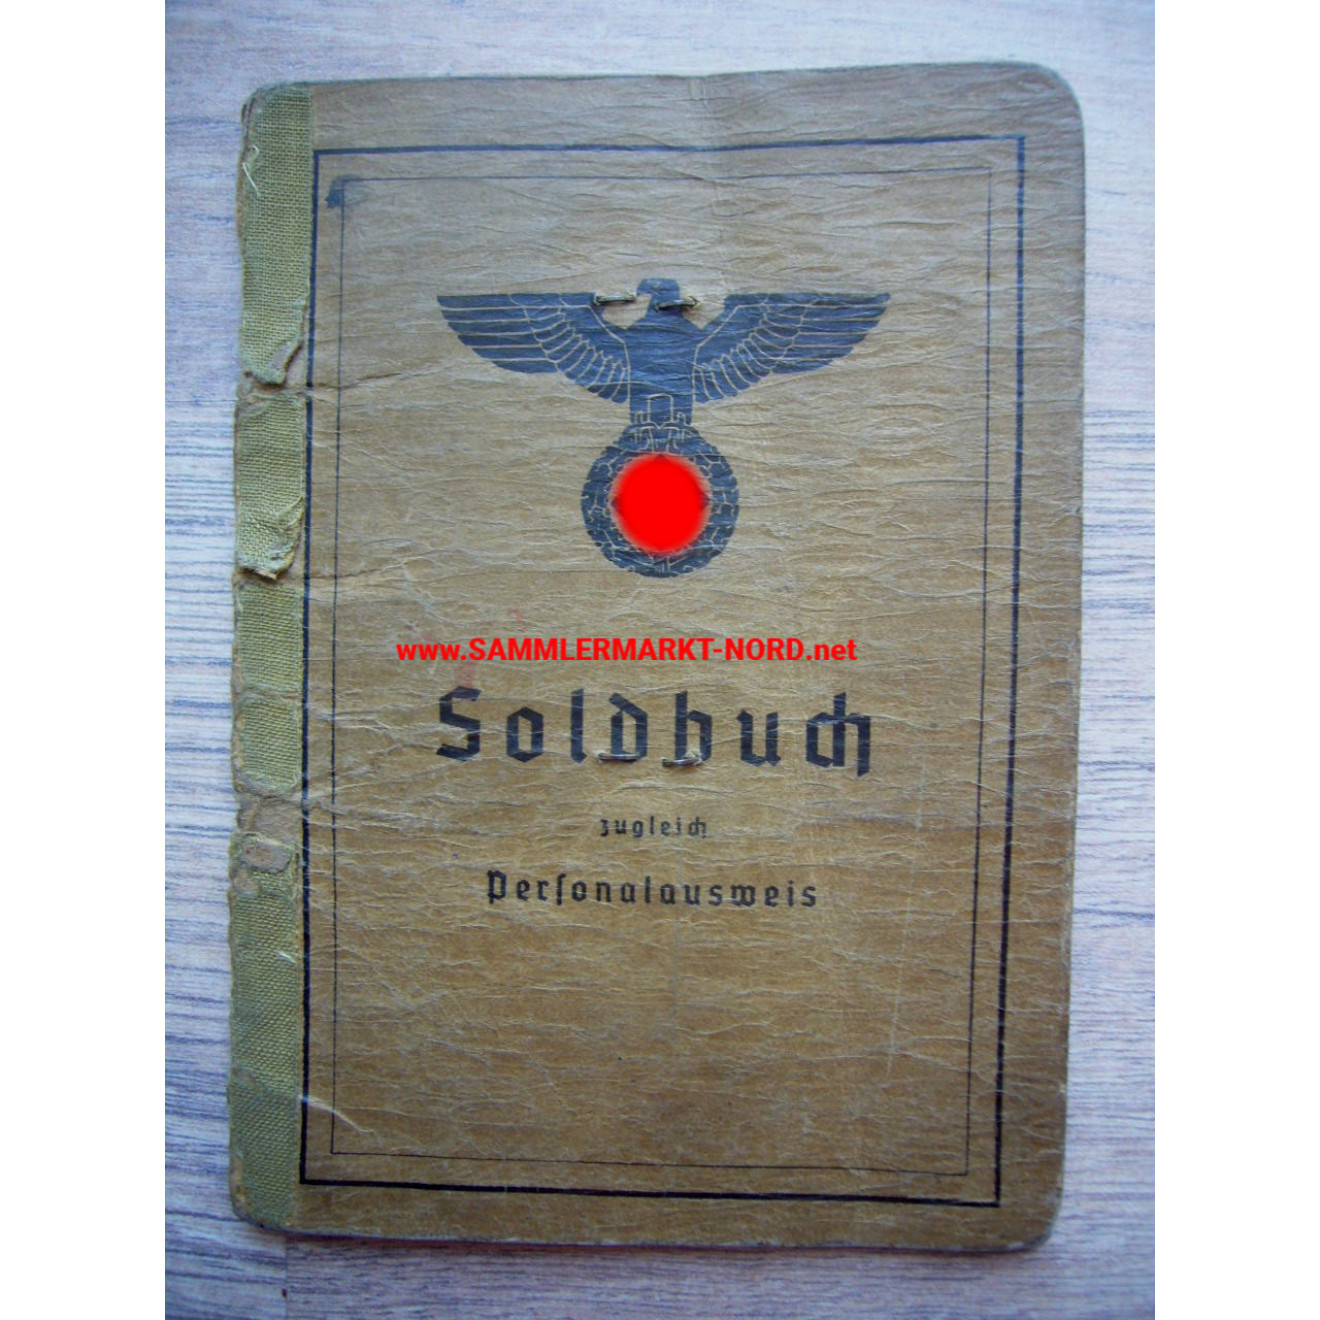 Soldbuch - Stab Major Schu, Einsatzstab Süddeutschland